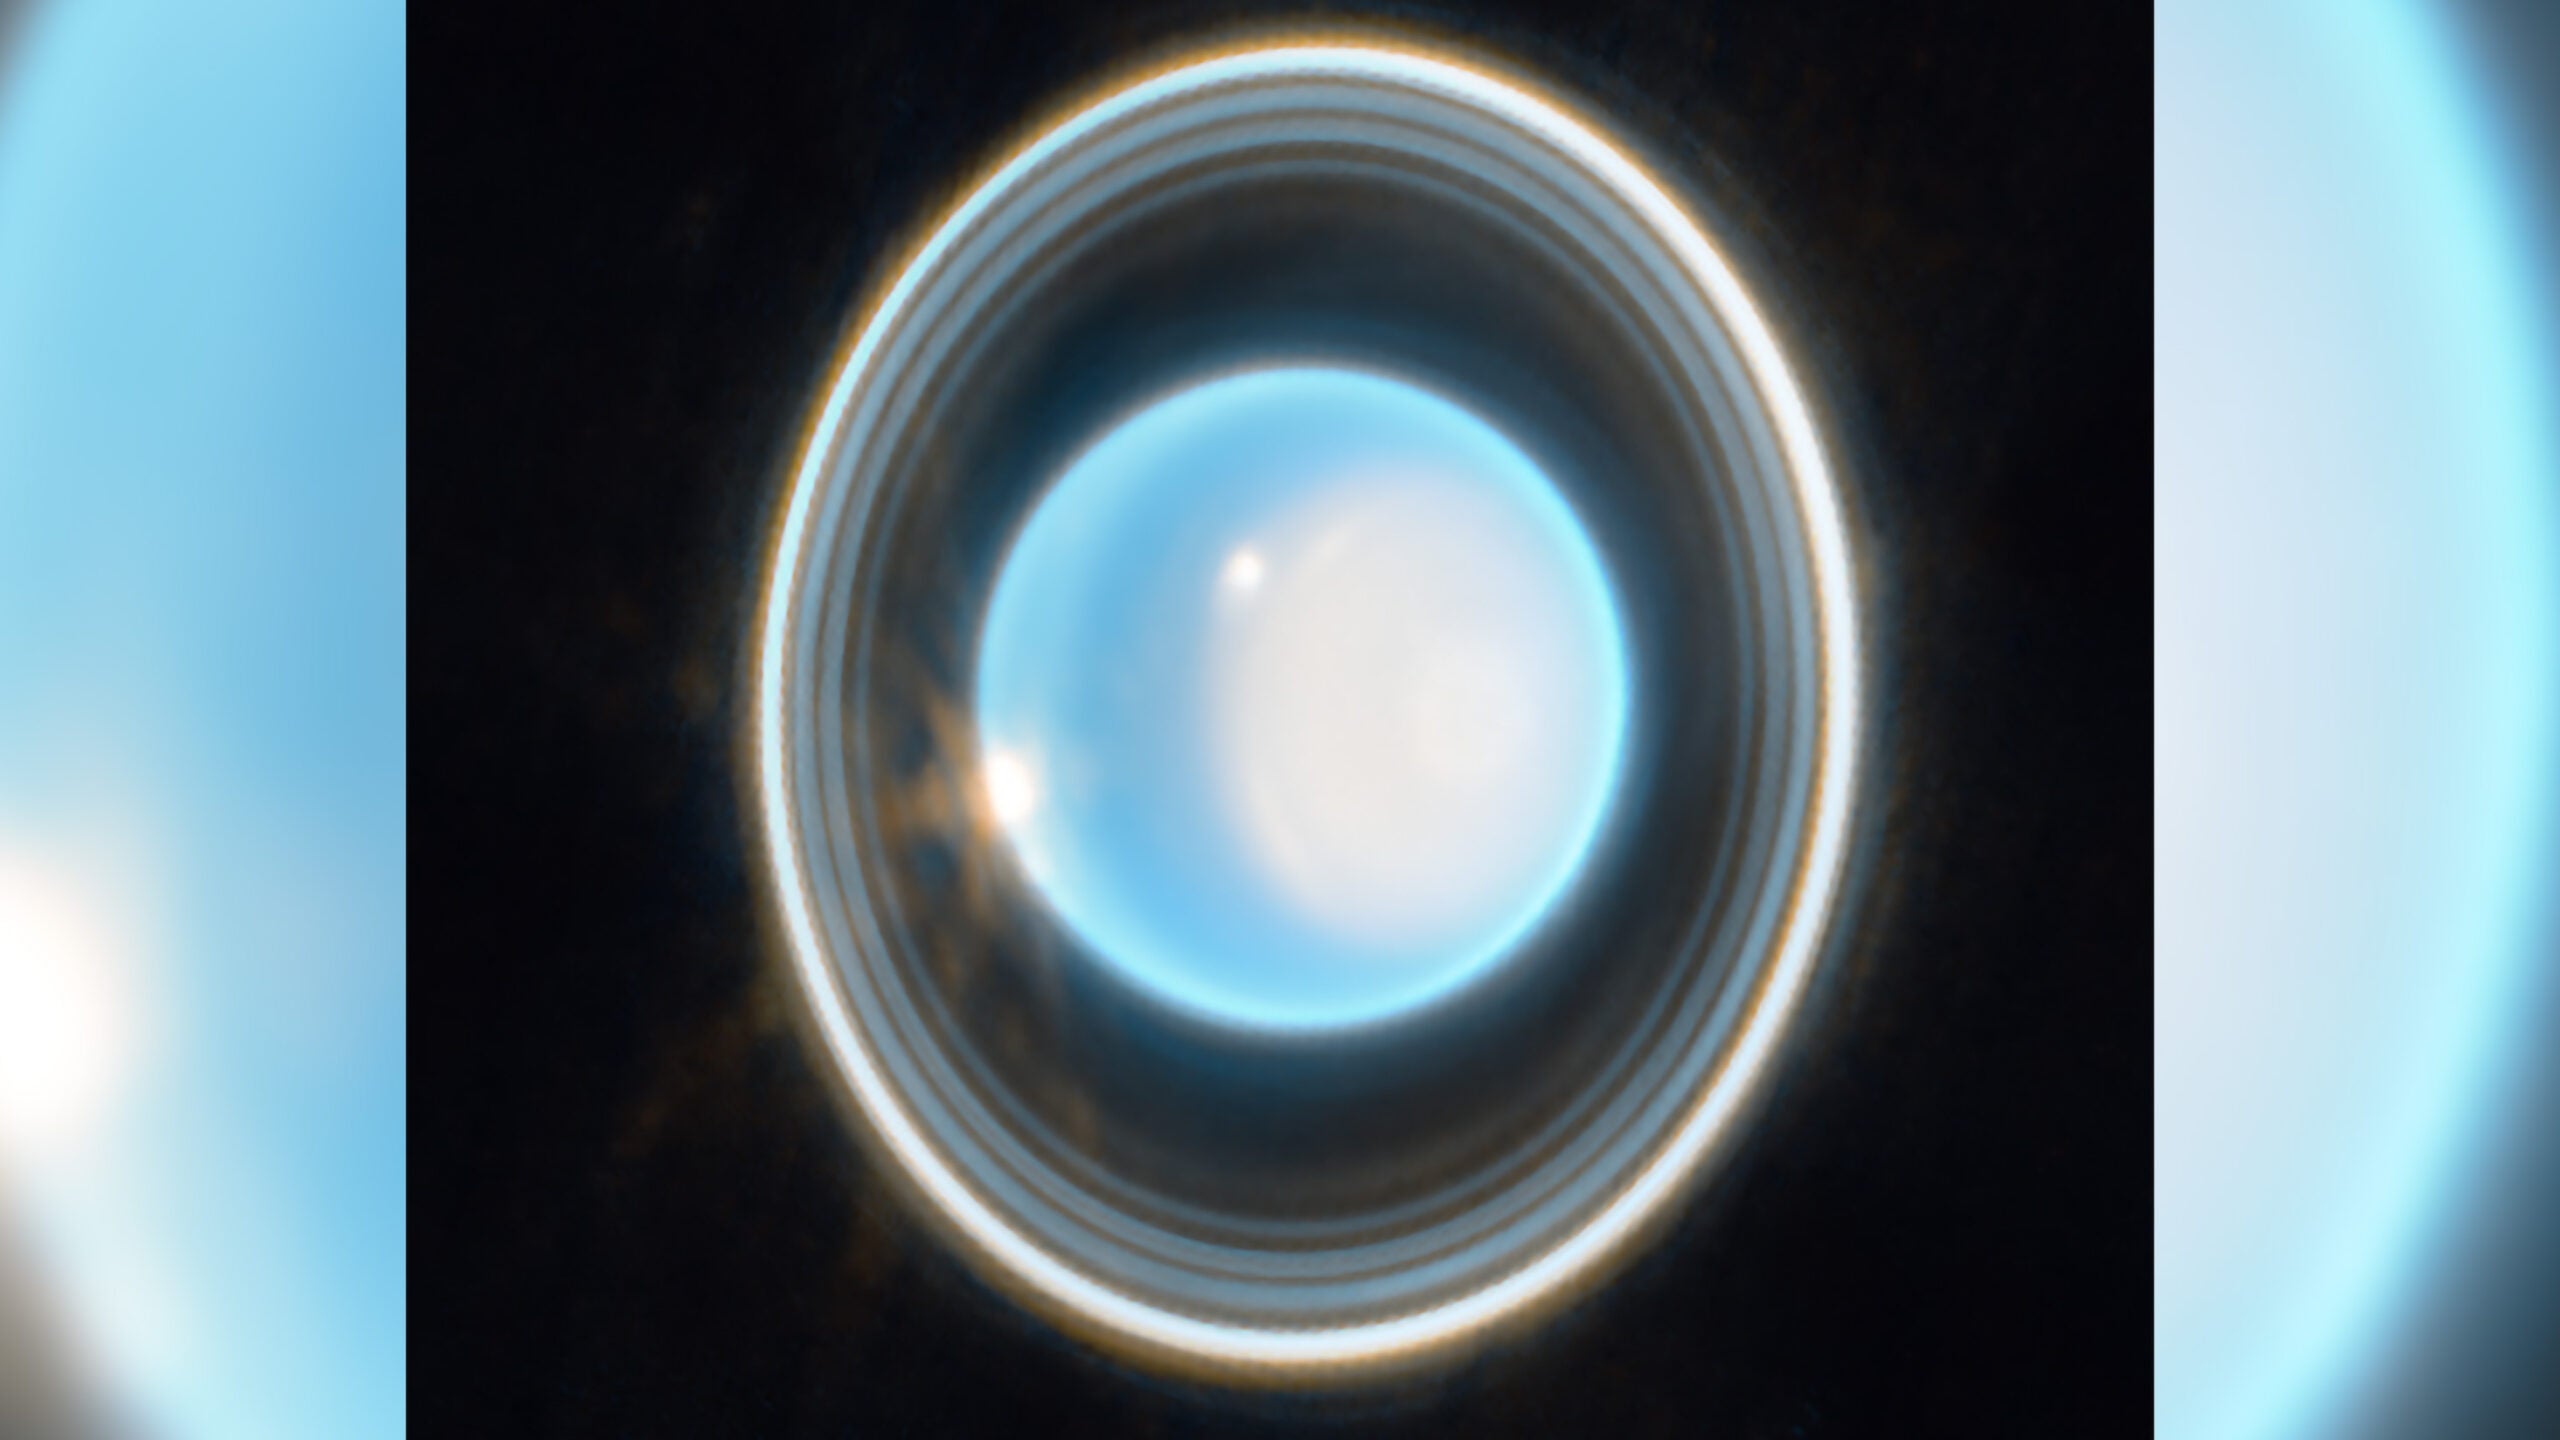 Pseudo-image of Uranus' Ring